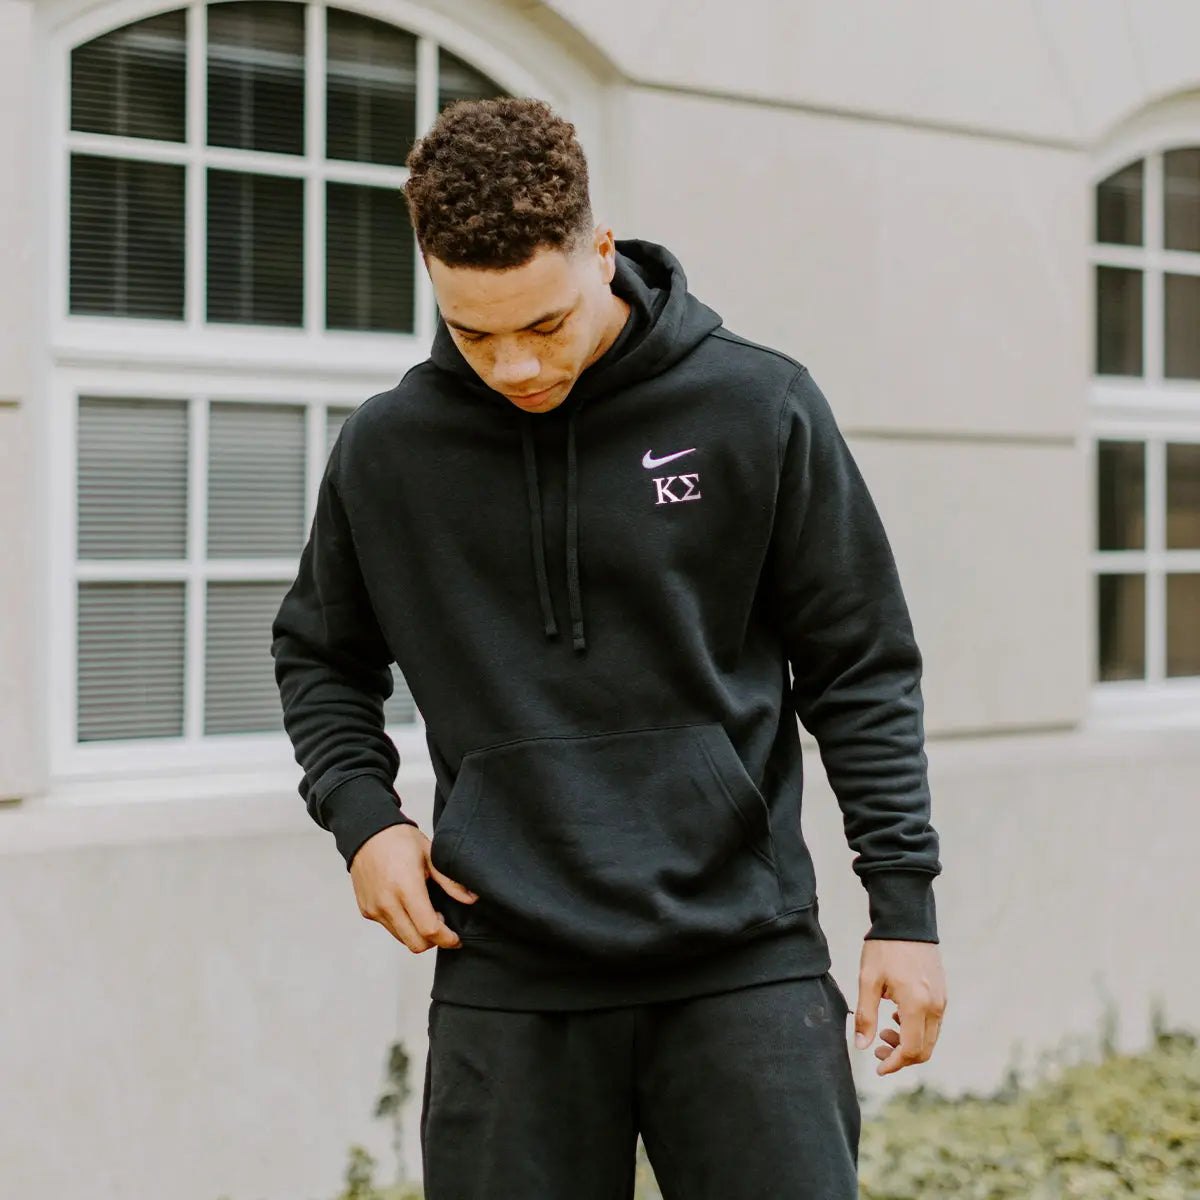 opstelling Verheugen Daarbij Kappa Sig Nike Black Embroidered Hoodie – Kappa Sigma Official Store